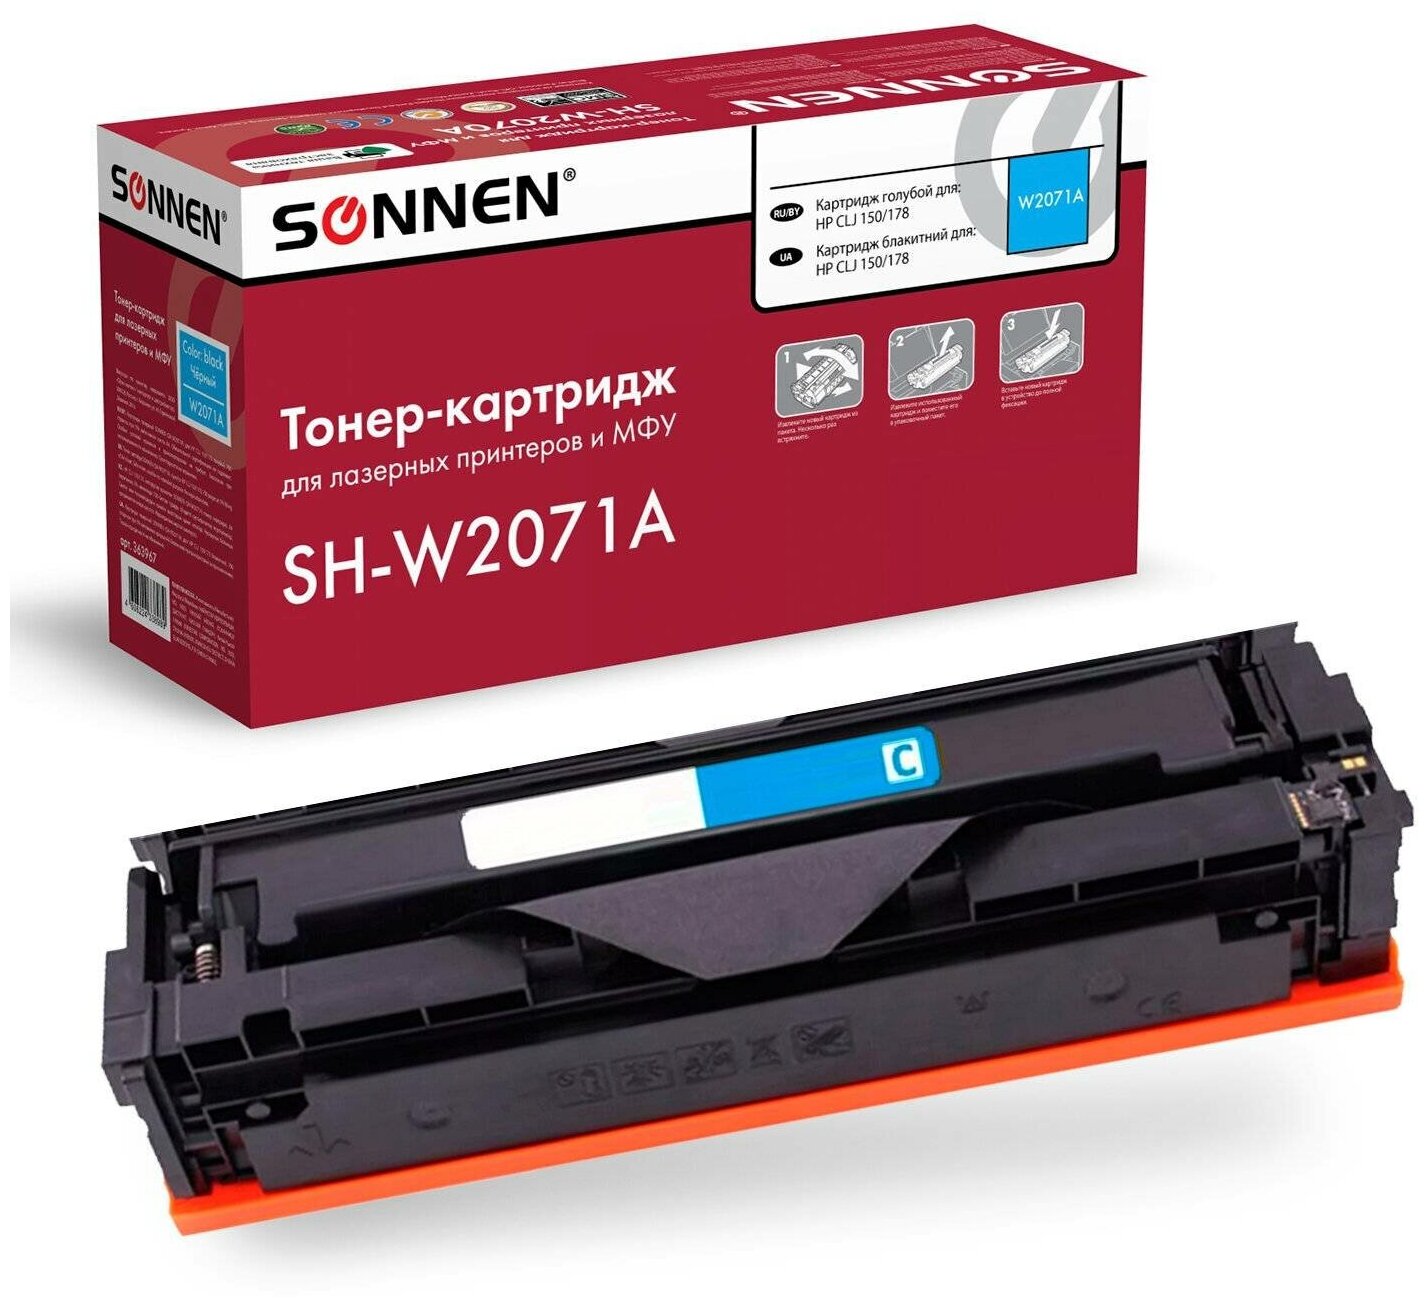 Картридж лазерный SONNEN (SH-W2071A) для HP CLJ 150/178 высшее качество, голубой, 700 страниц, 363967